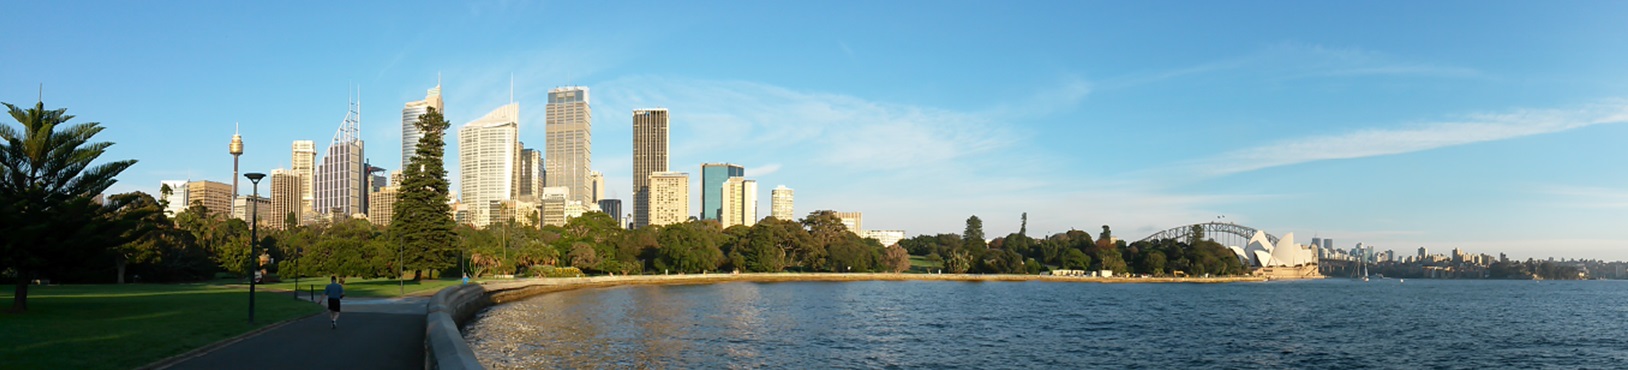 Sydney: Skyline am Royalen Botanischen Garten